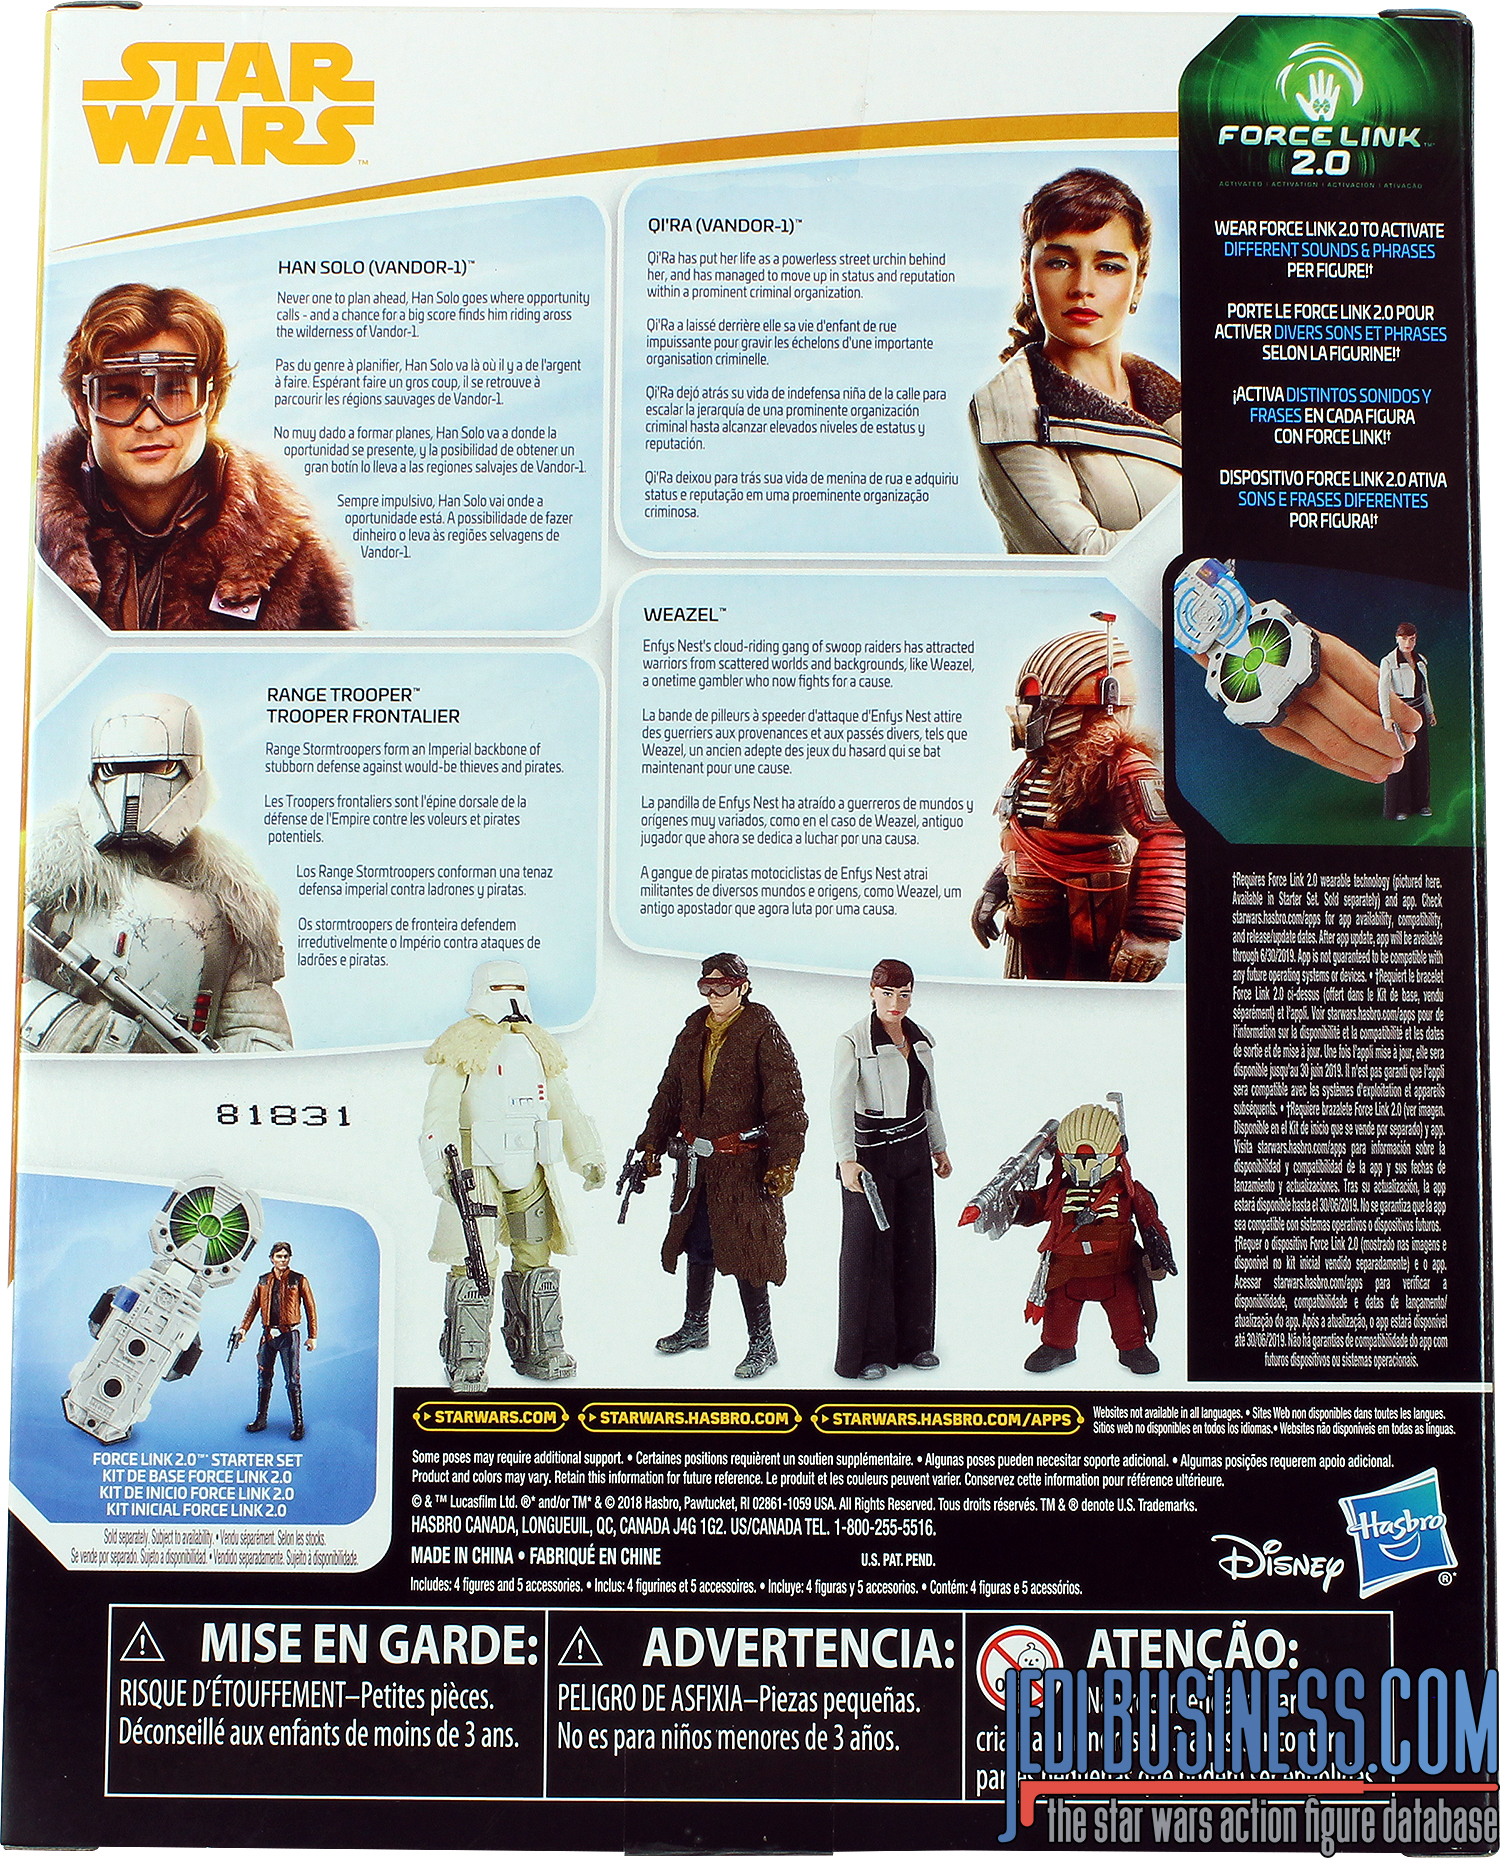 Han Solo Mission On Vandor-1 4-Pack